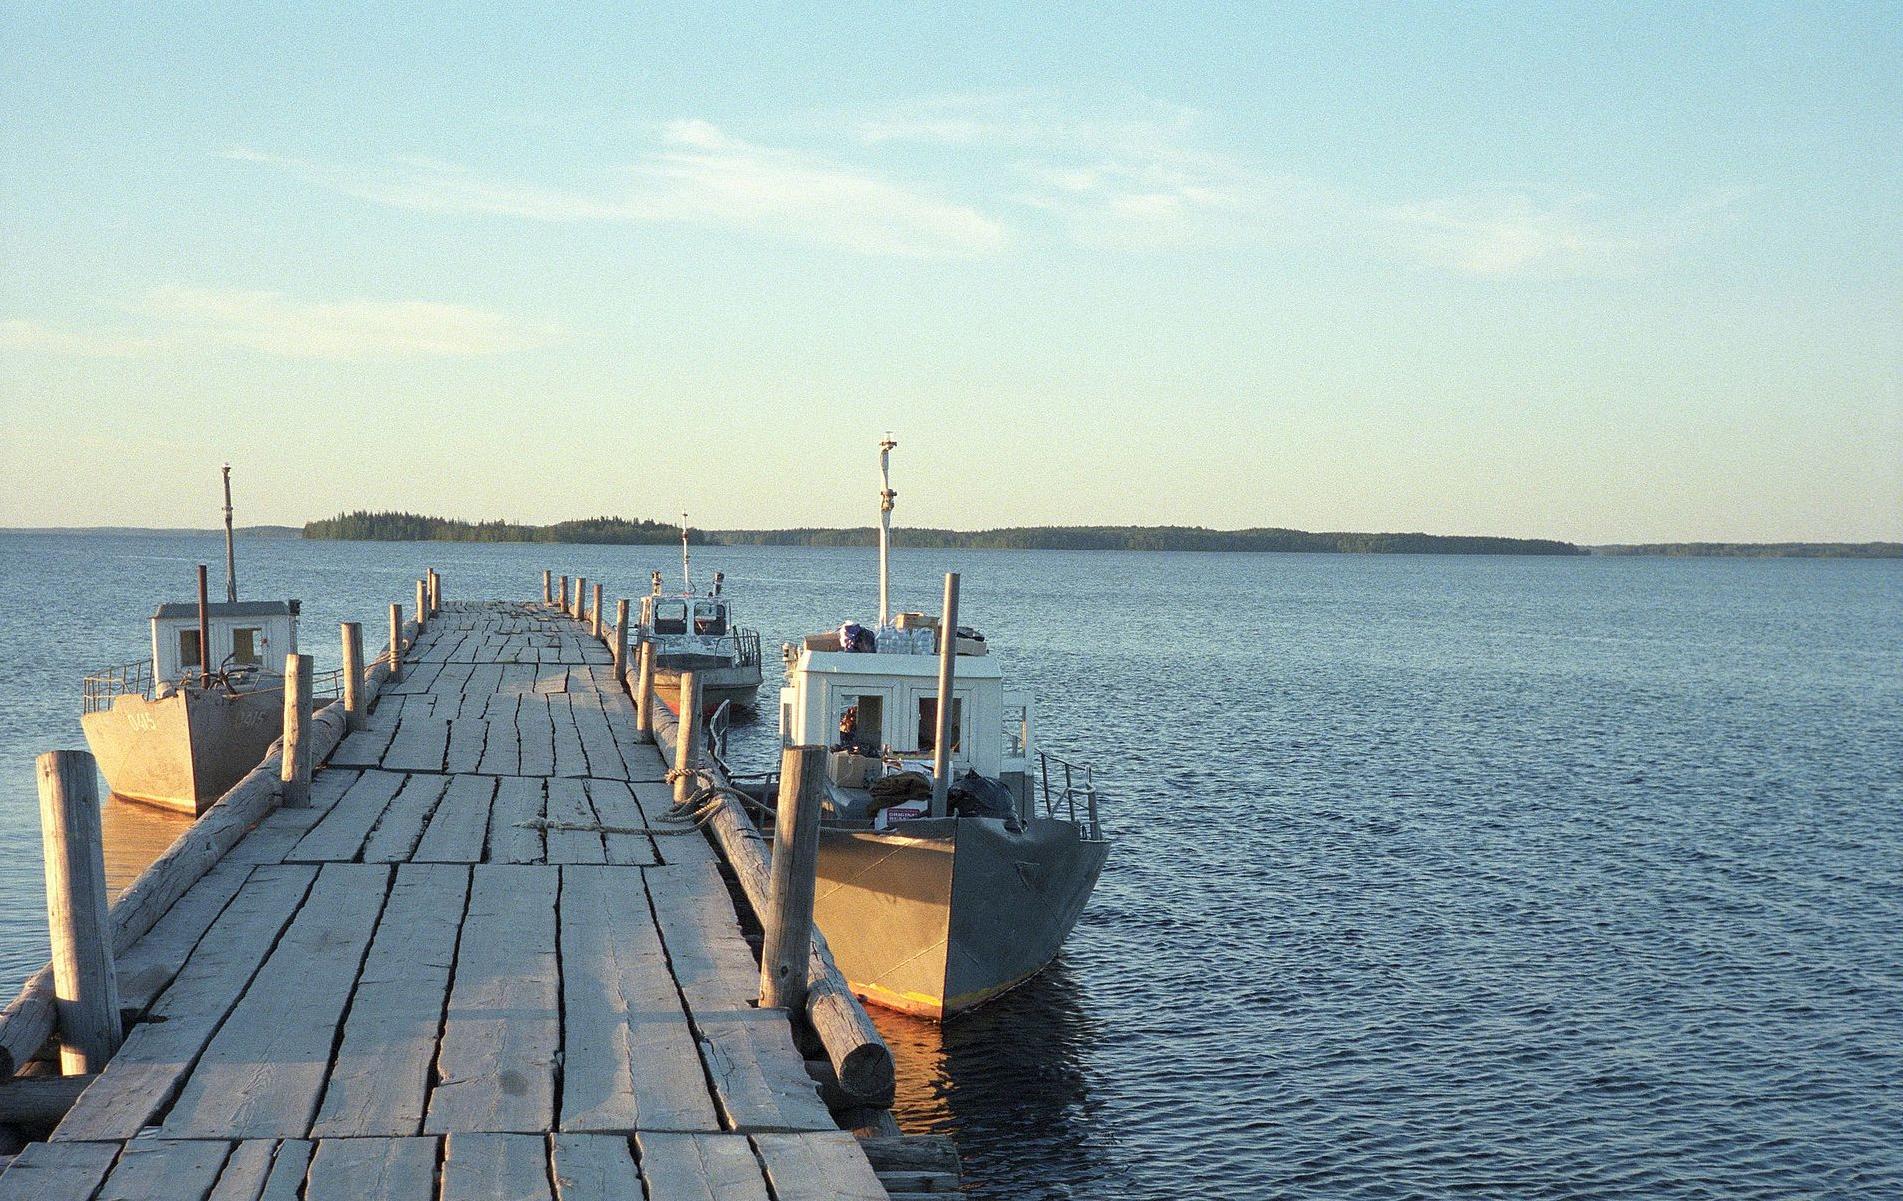 Vodlajärvellä on 196 saarta. Kuganavolokin saaren lähellä sijaitsee Suursaari, johon avataan nykytaiteen ulkoilmamuseo. Kuva: ru.wikipedia.org/wiki 